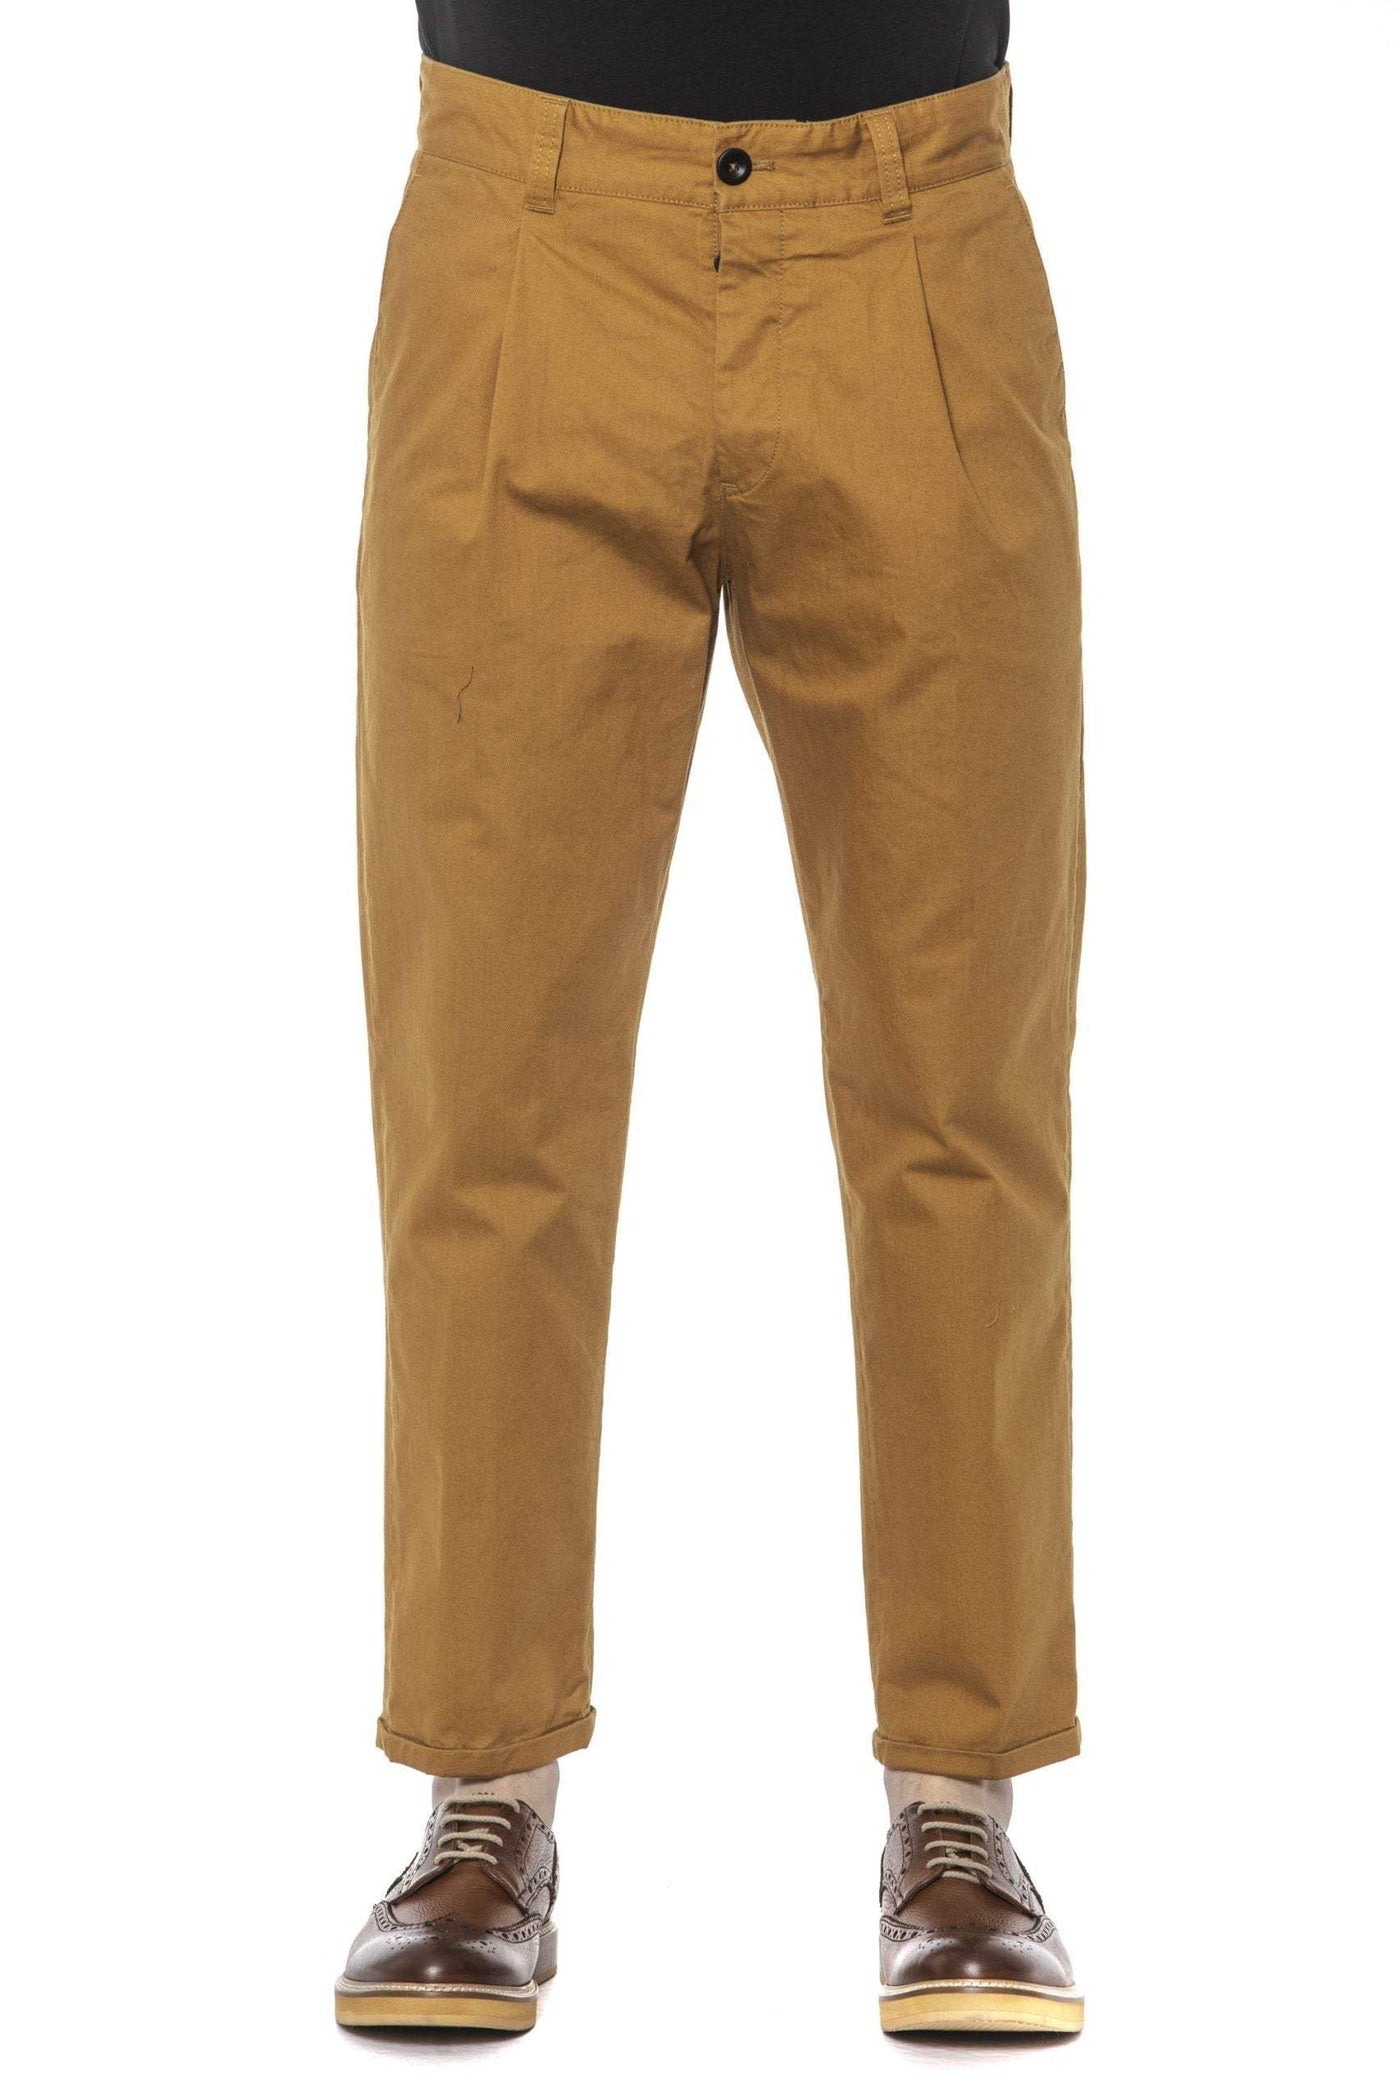 PT Torino Brown Cotton Jeans & Pant #men, Brown, feed-1, Jeans & Pants - Men - Clothing, PT Torino, W36 at SEYMAYKA